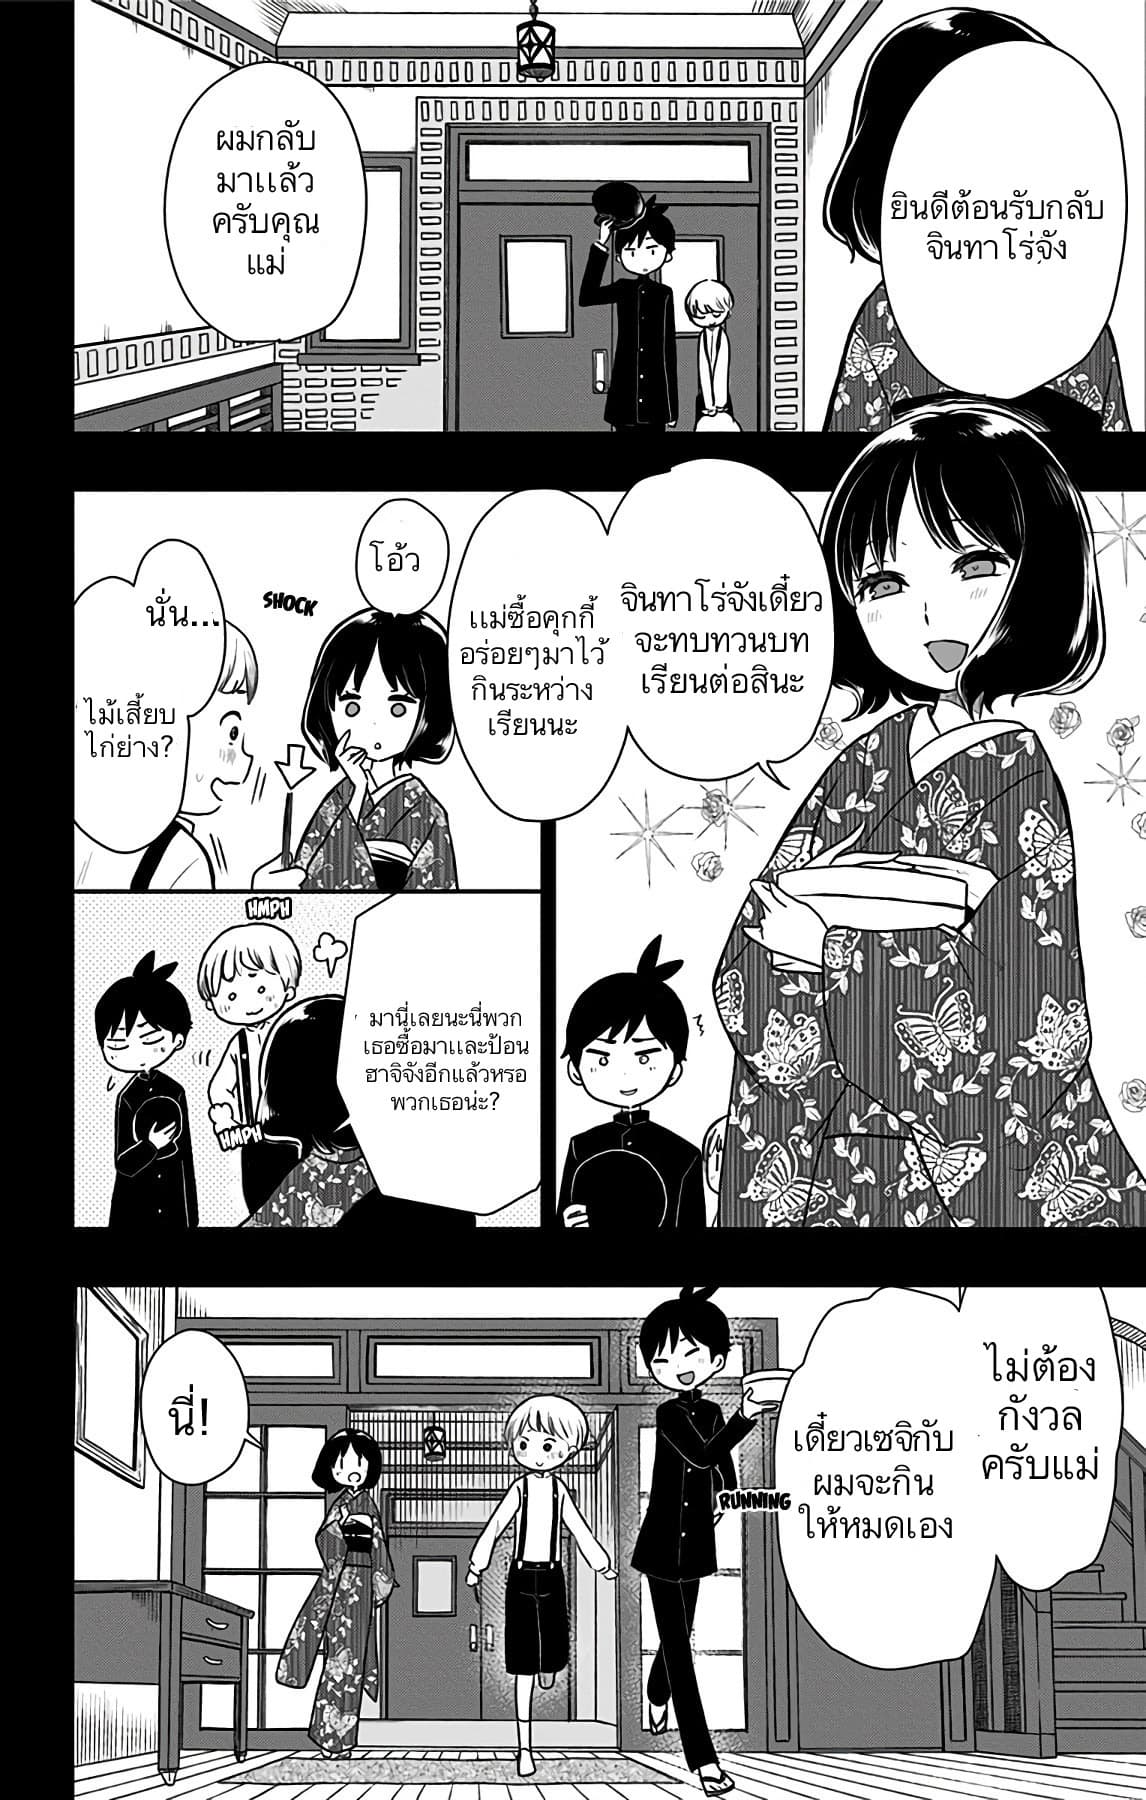 Shouwa Otome Otogibanashi เรื่องเล่าของสาวน้อย ยุคโชวะ ตอนที่ 12 (10)